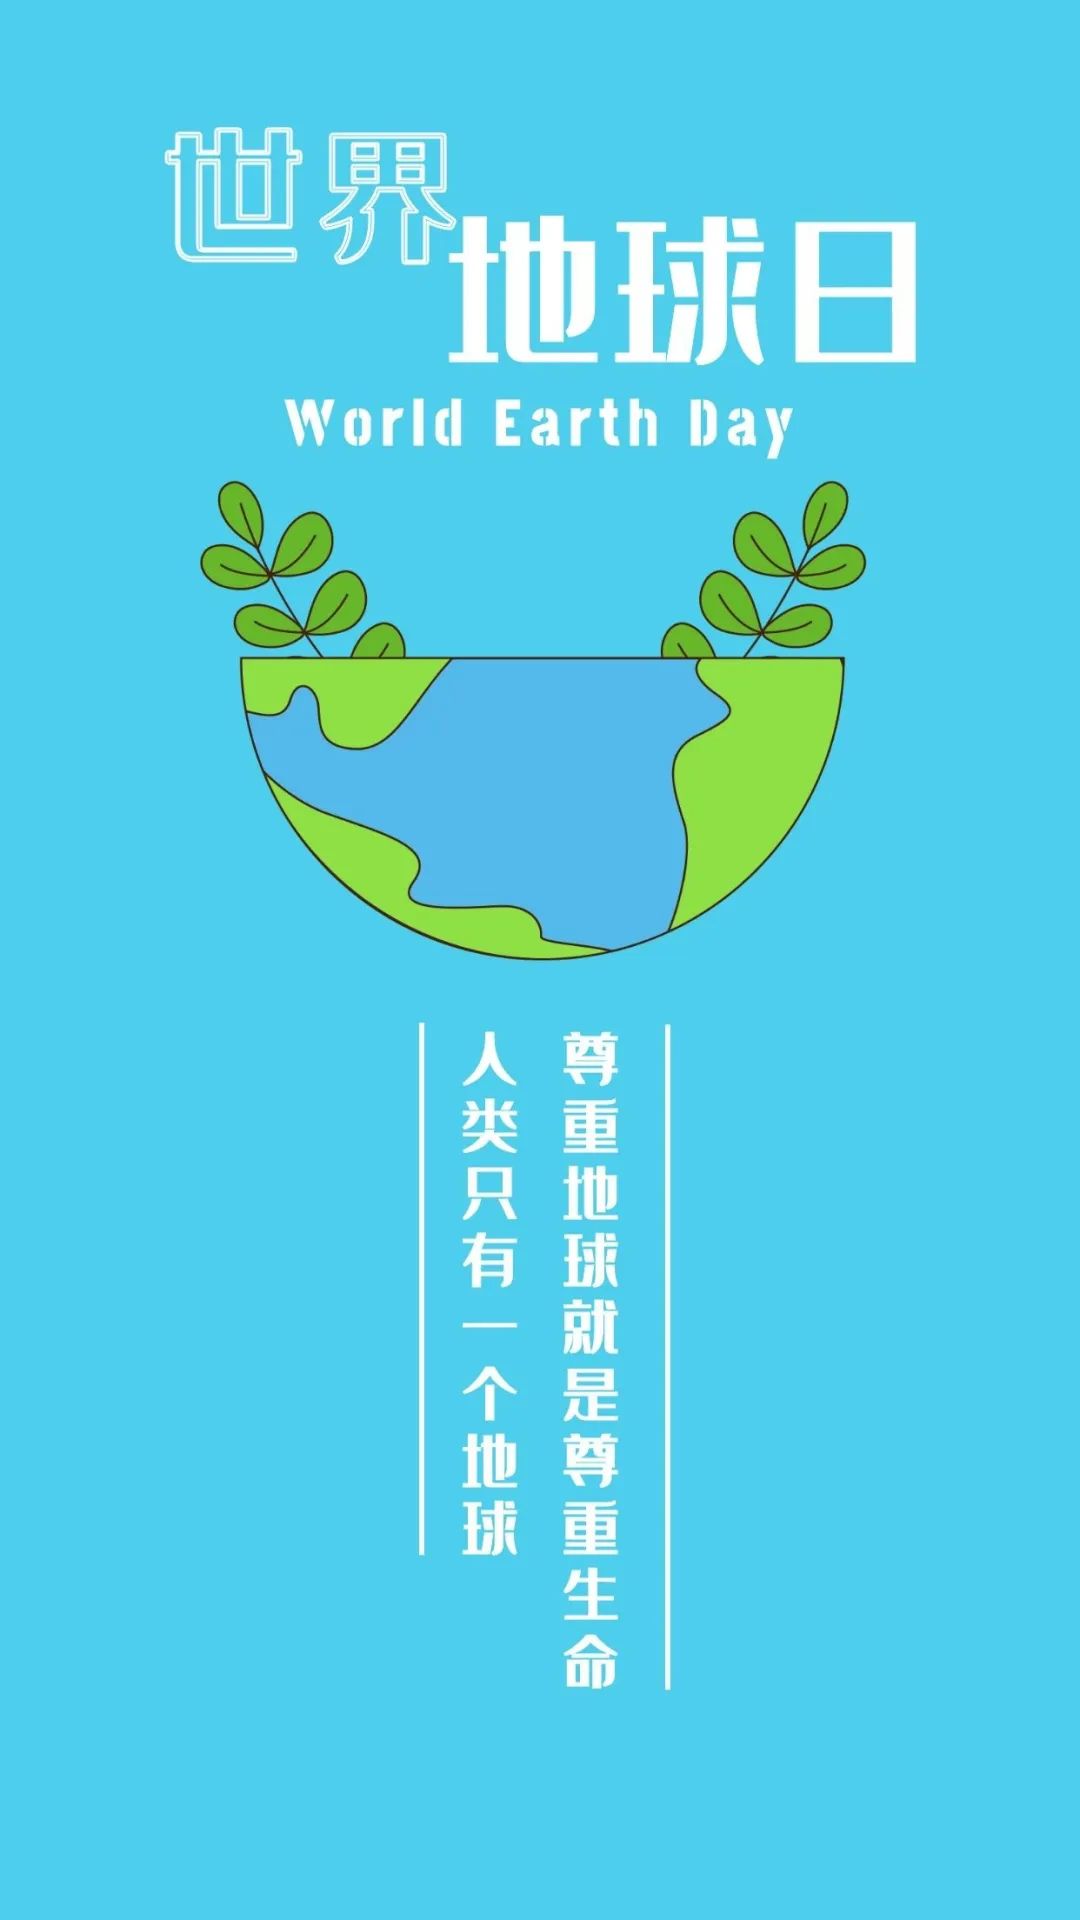 世界地球日丨人类只有一个地球,保护宣传标语写起来